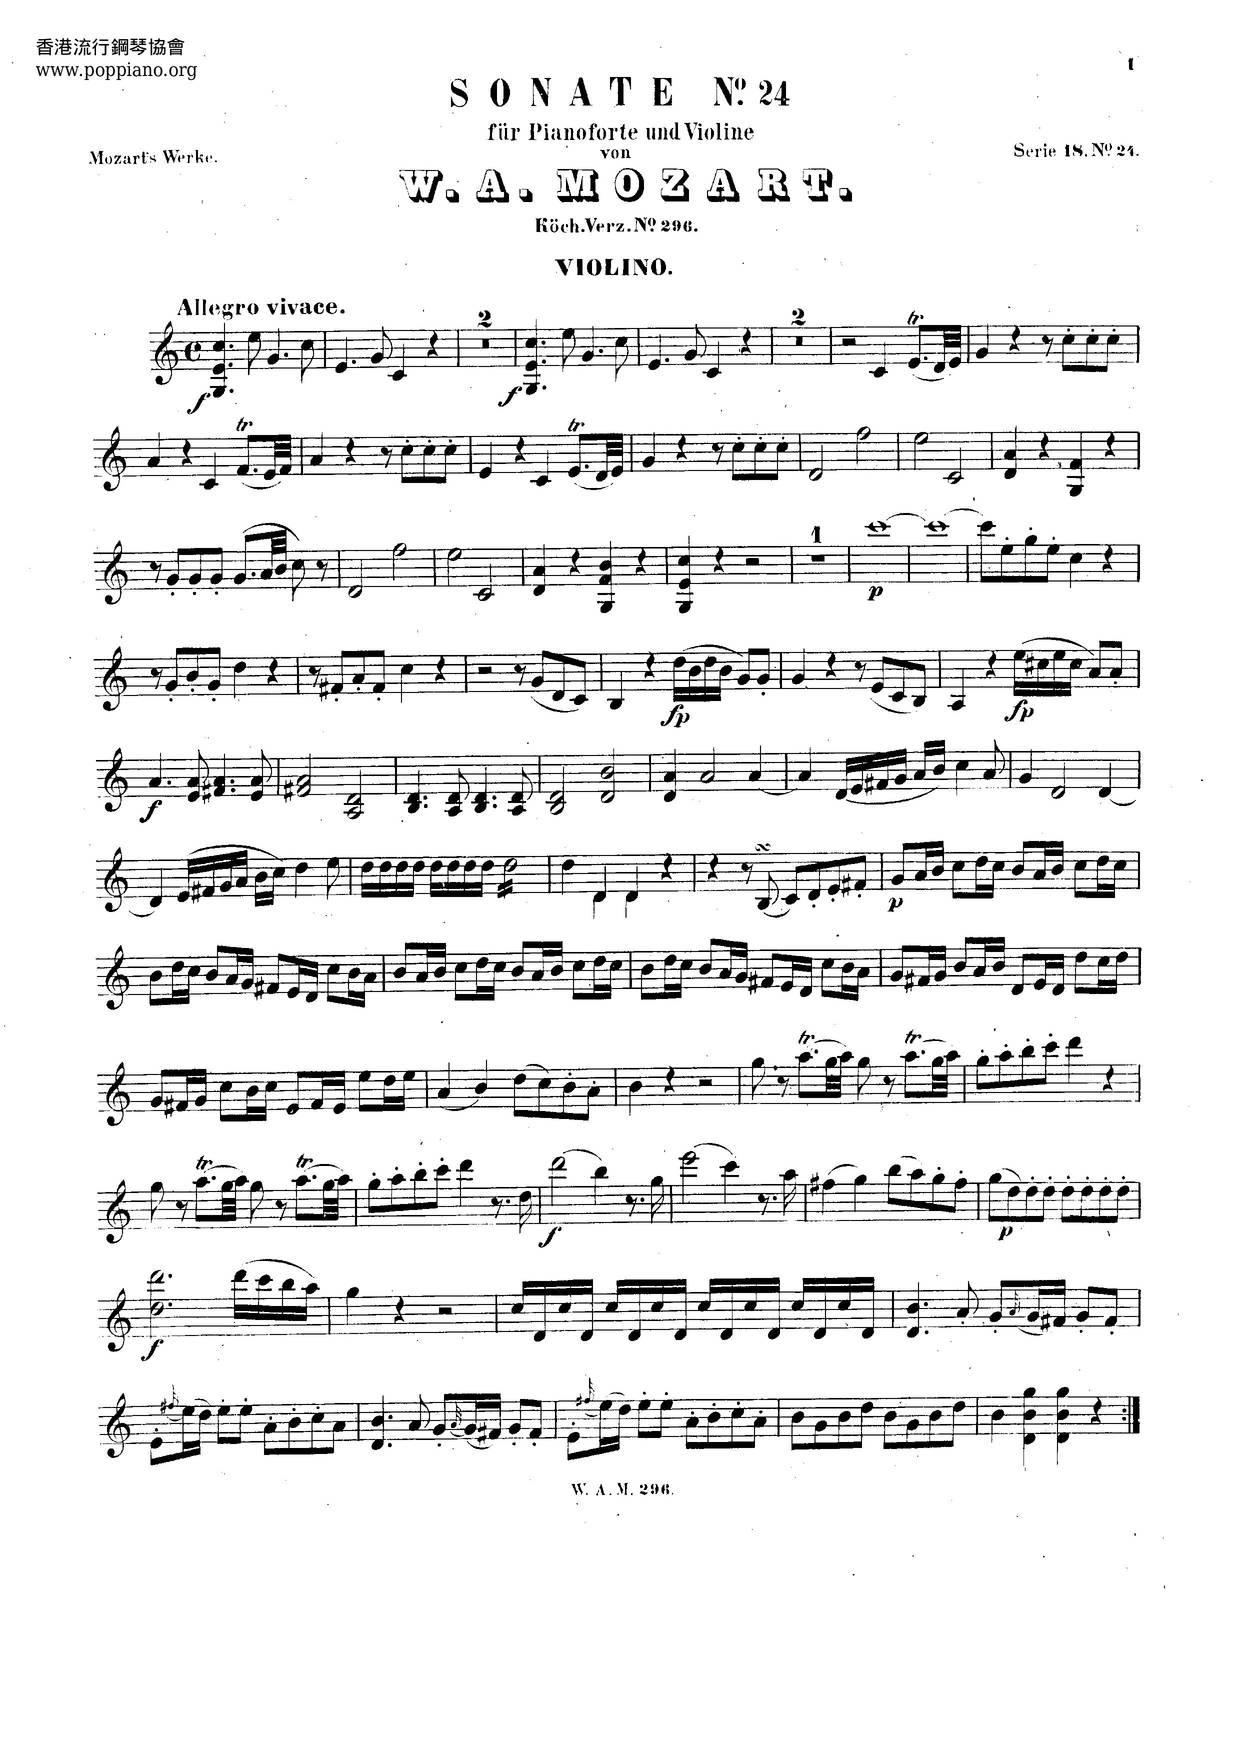 Violin Sonata In C Major, K. 296 Score